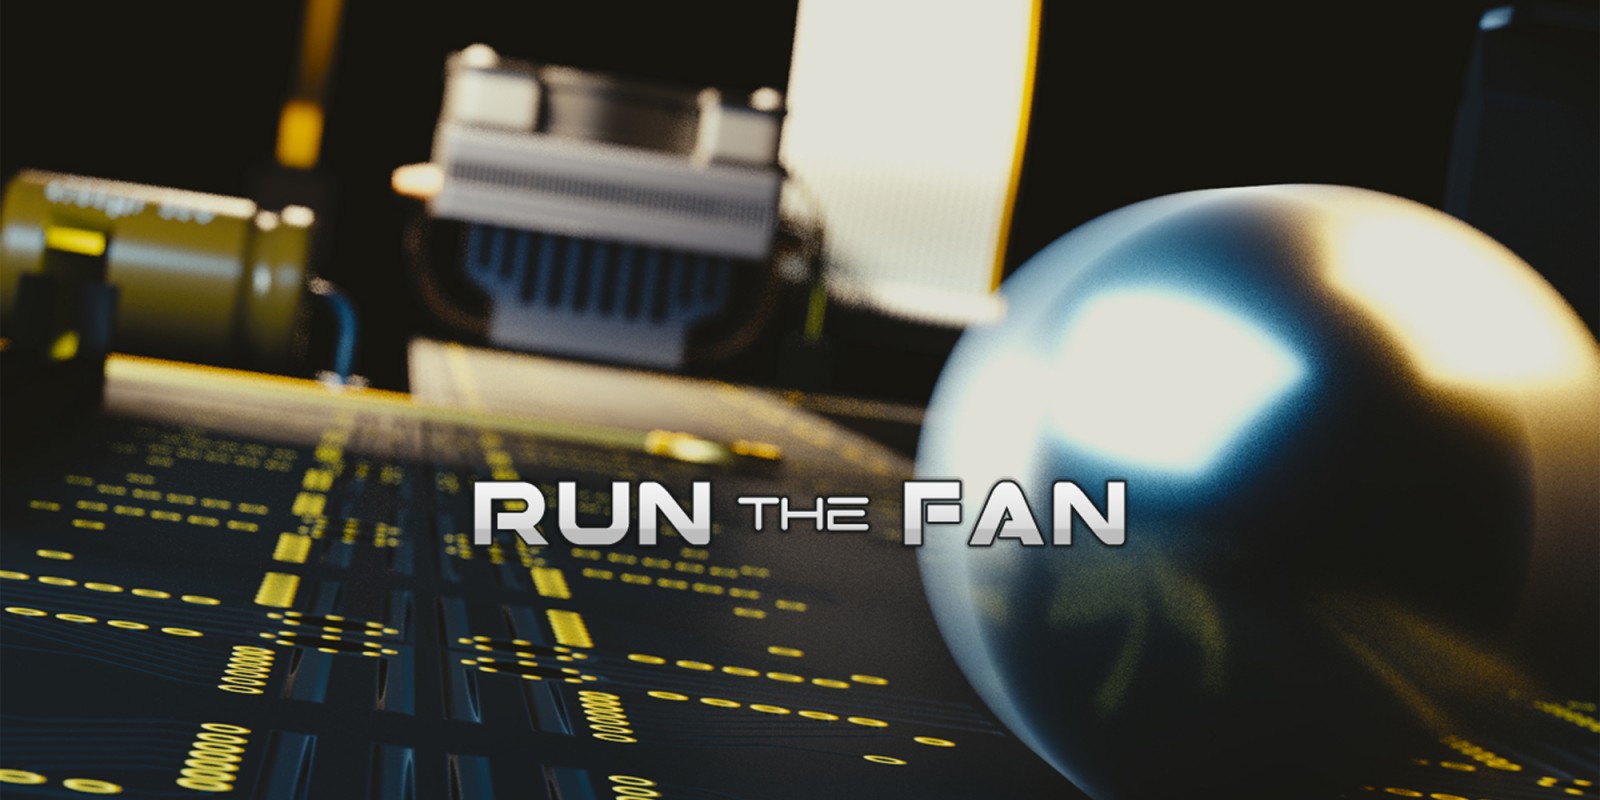 Run the Fan